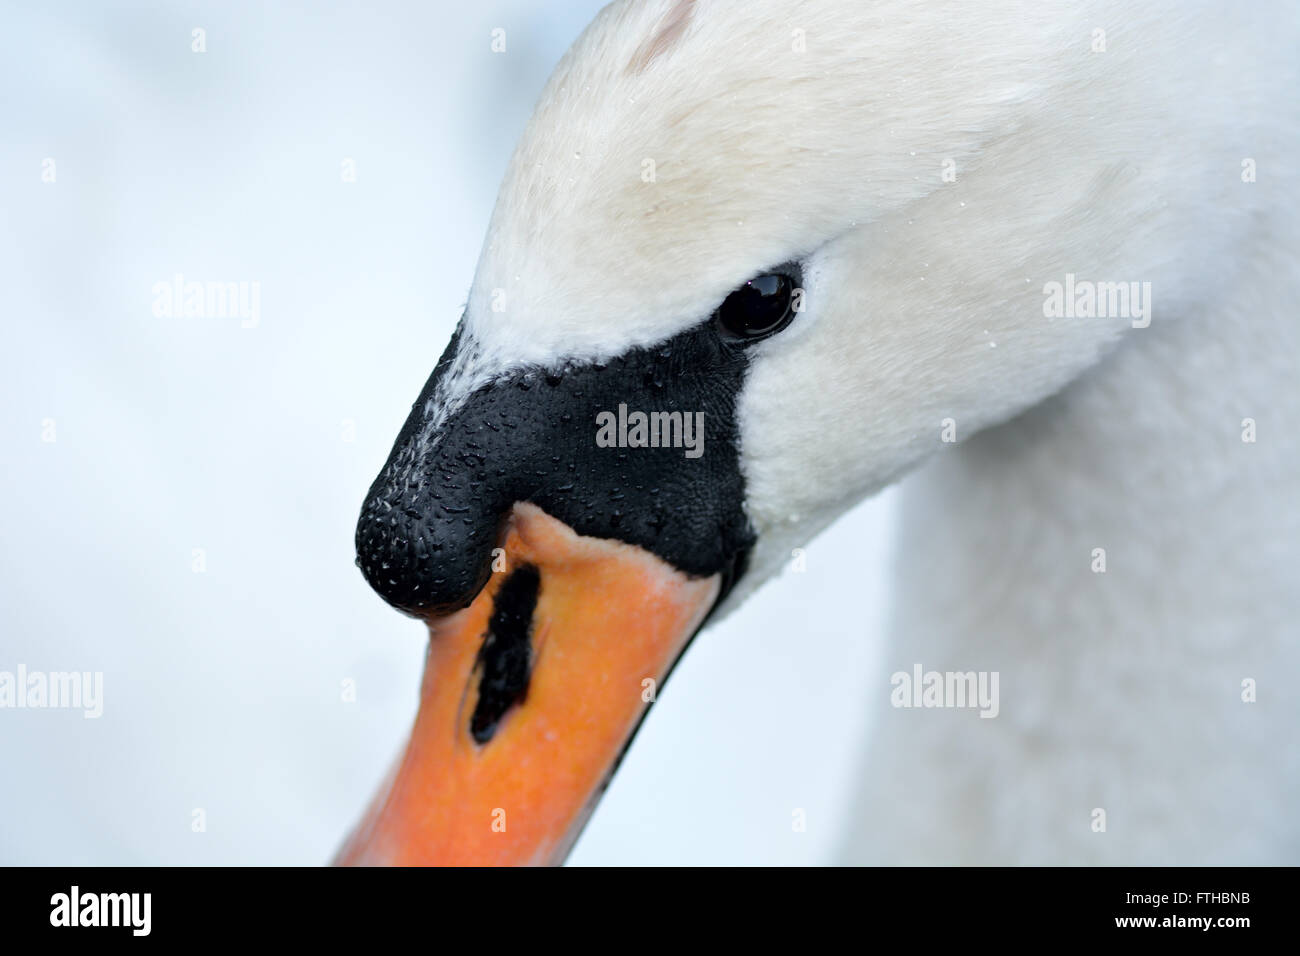 Cigno (Cygnus olor) in prossimità della testa e bill. Bianco grande uccello di acqua nella famiglia anatidi, mostrando distintivo manopola nera Foto Stock